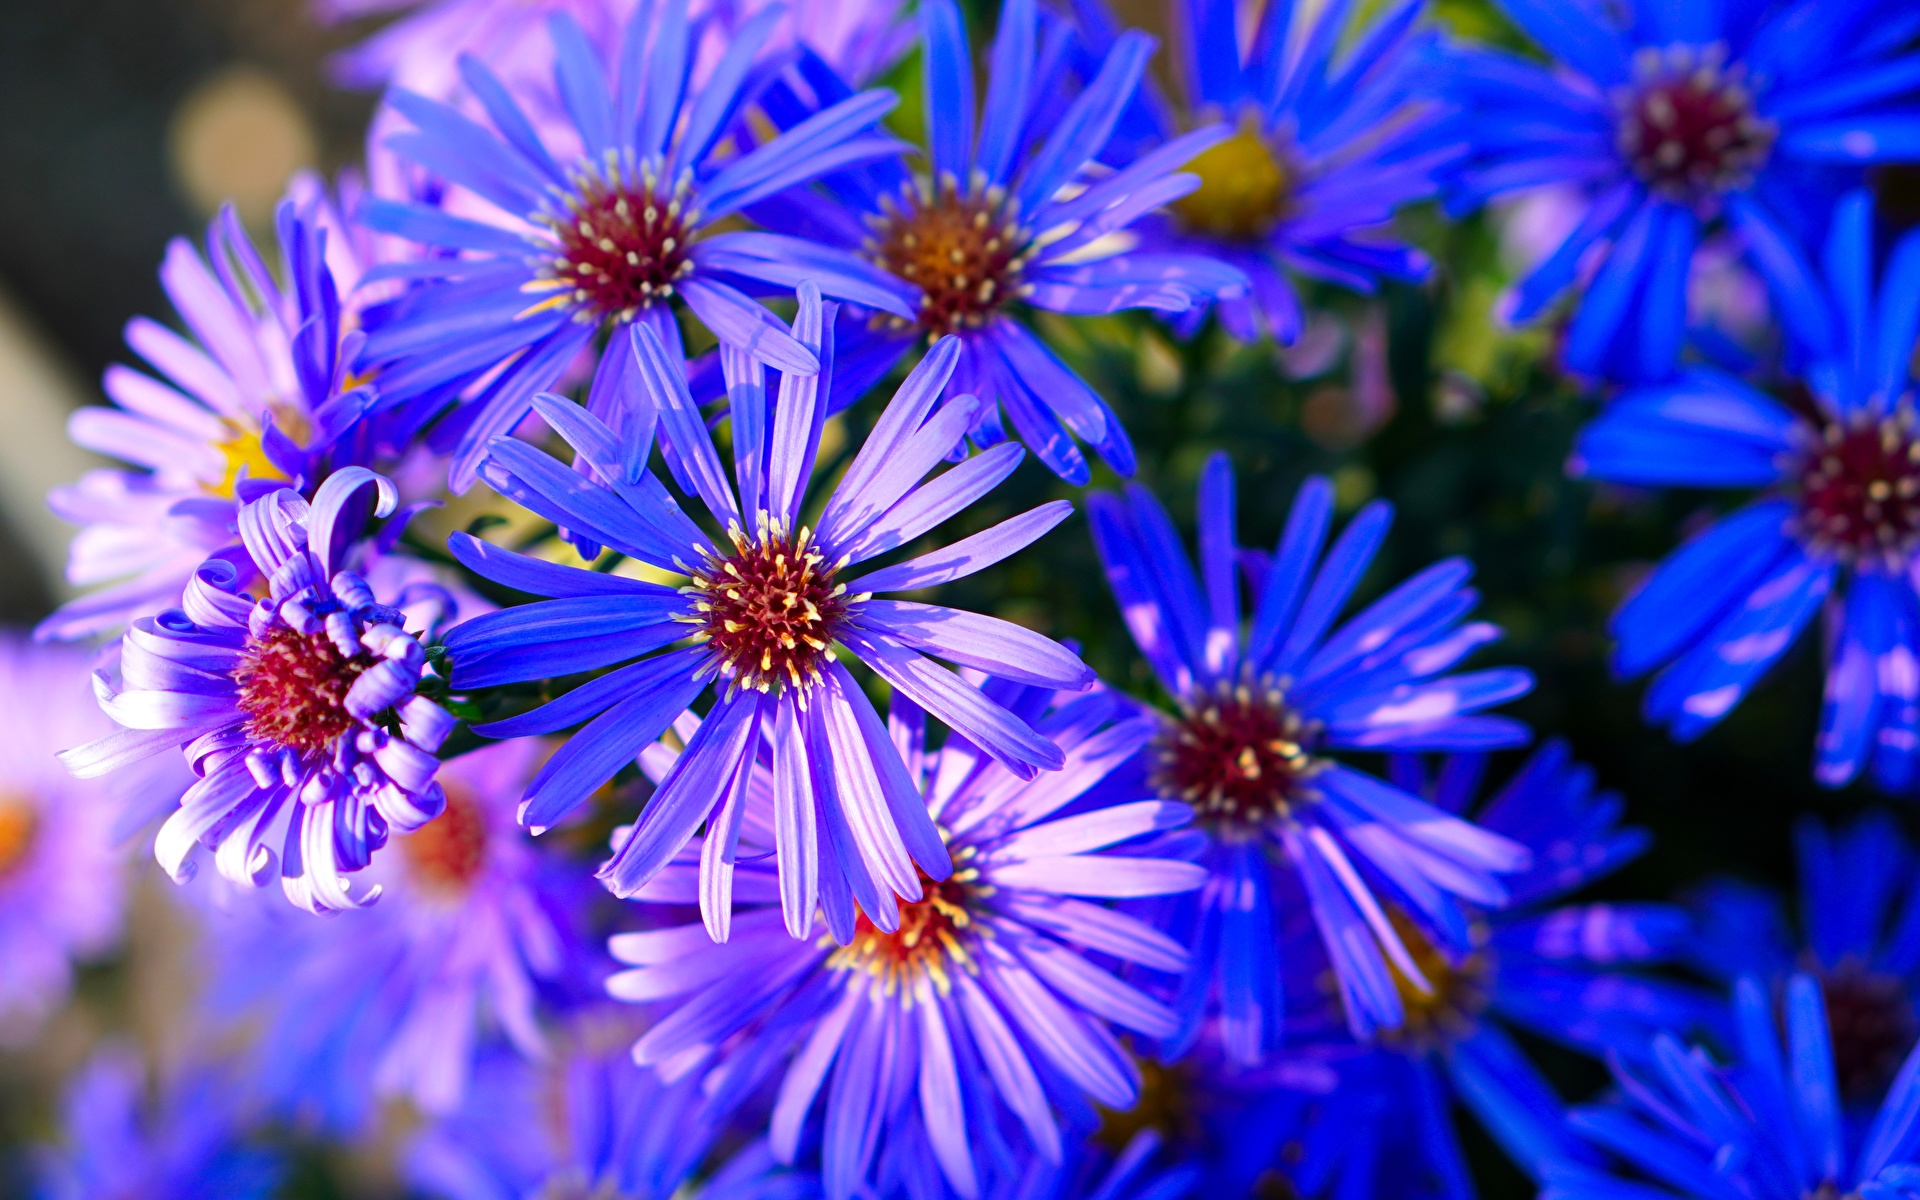 Обои для рабочего стола Синий Астры Цветы Много Крупным планом 1920x1200 синяя синие синих цветок вблизи